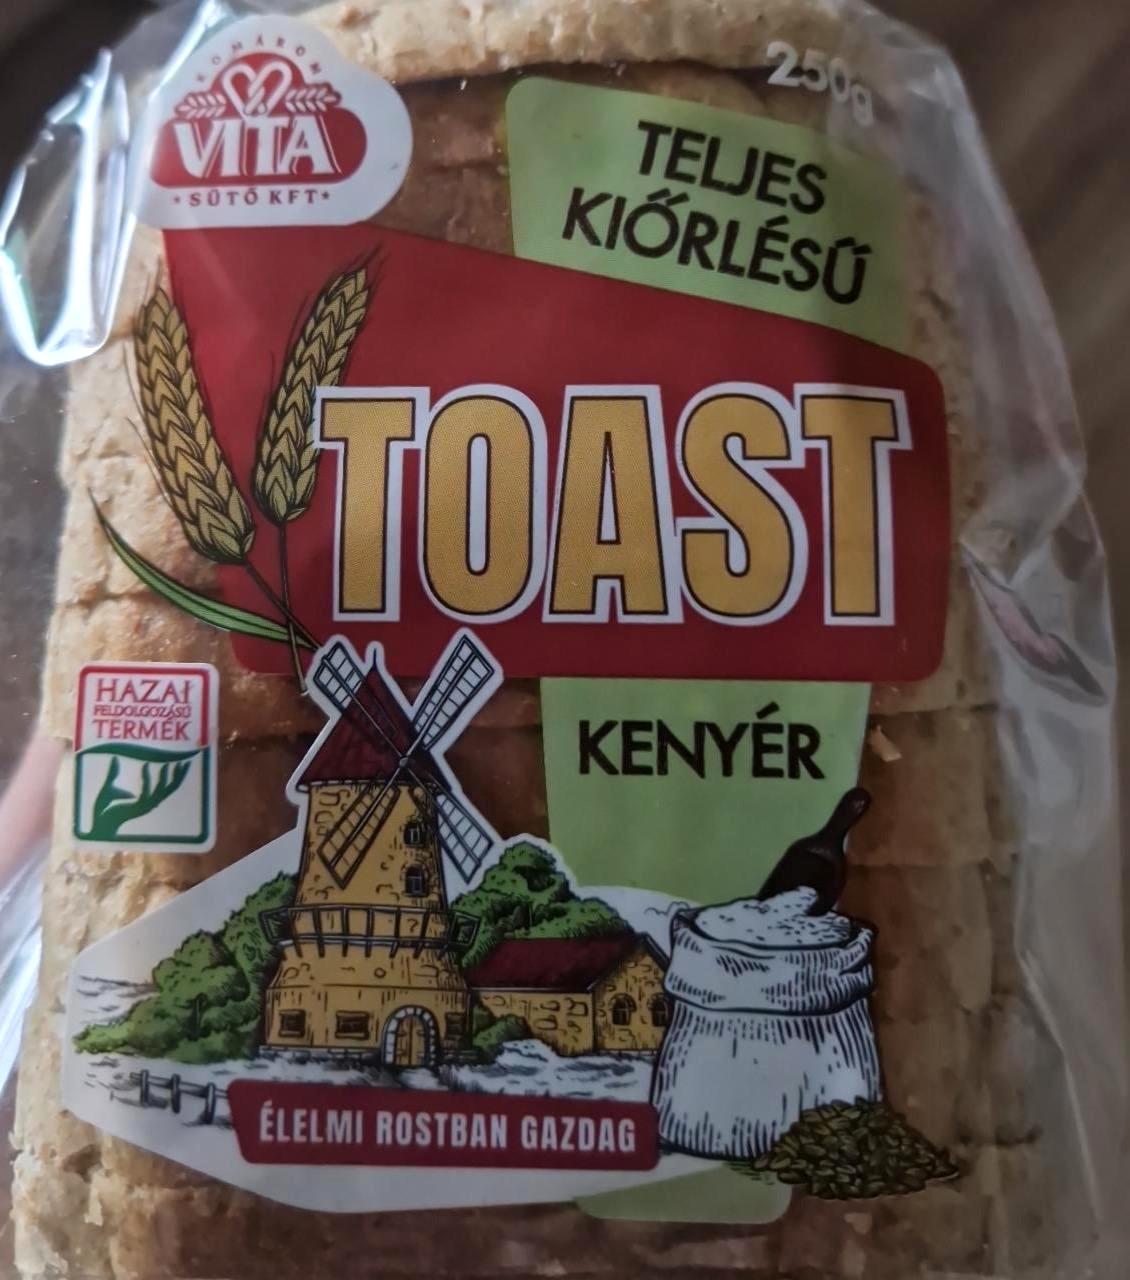 Képek - Teljes kiőrlésű toast kenyér Vita sütő Kft.